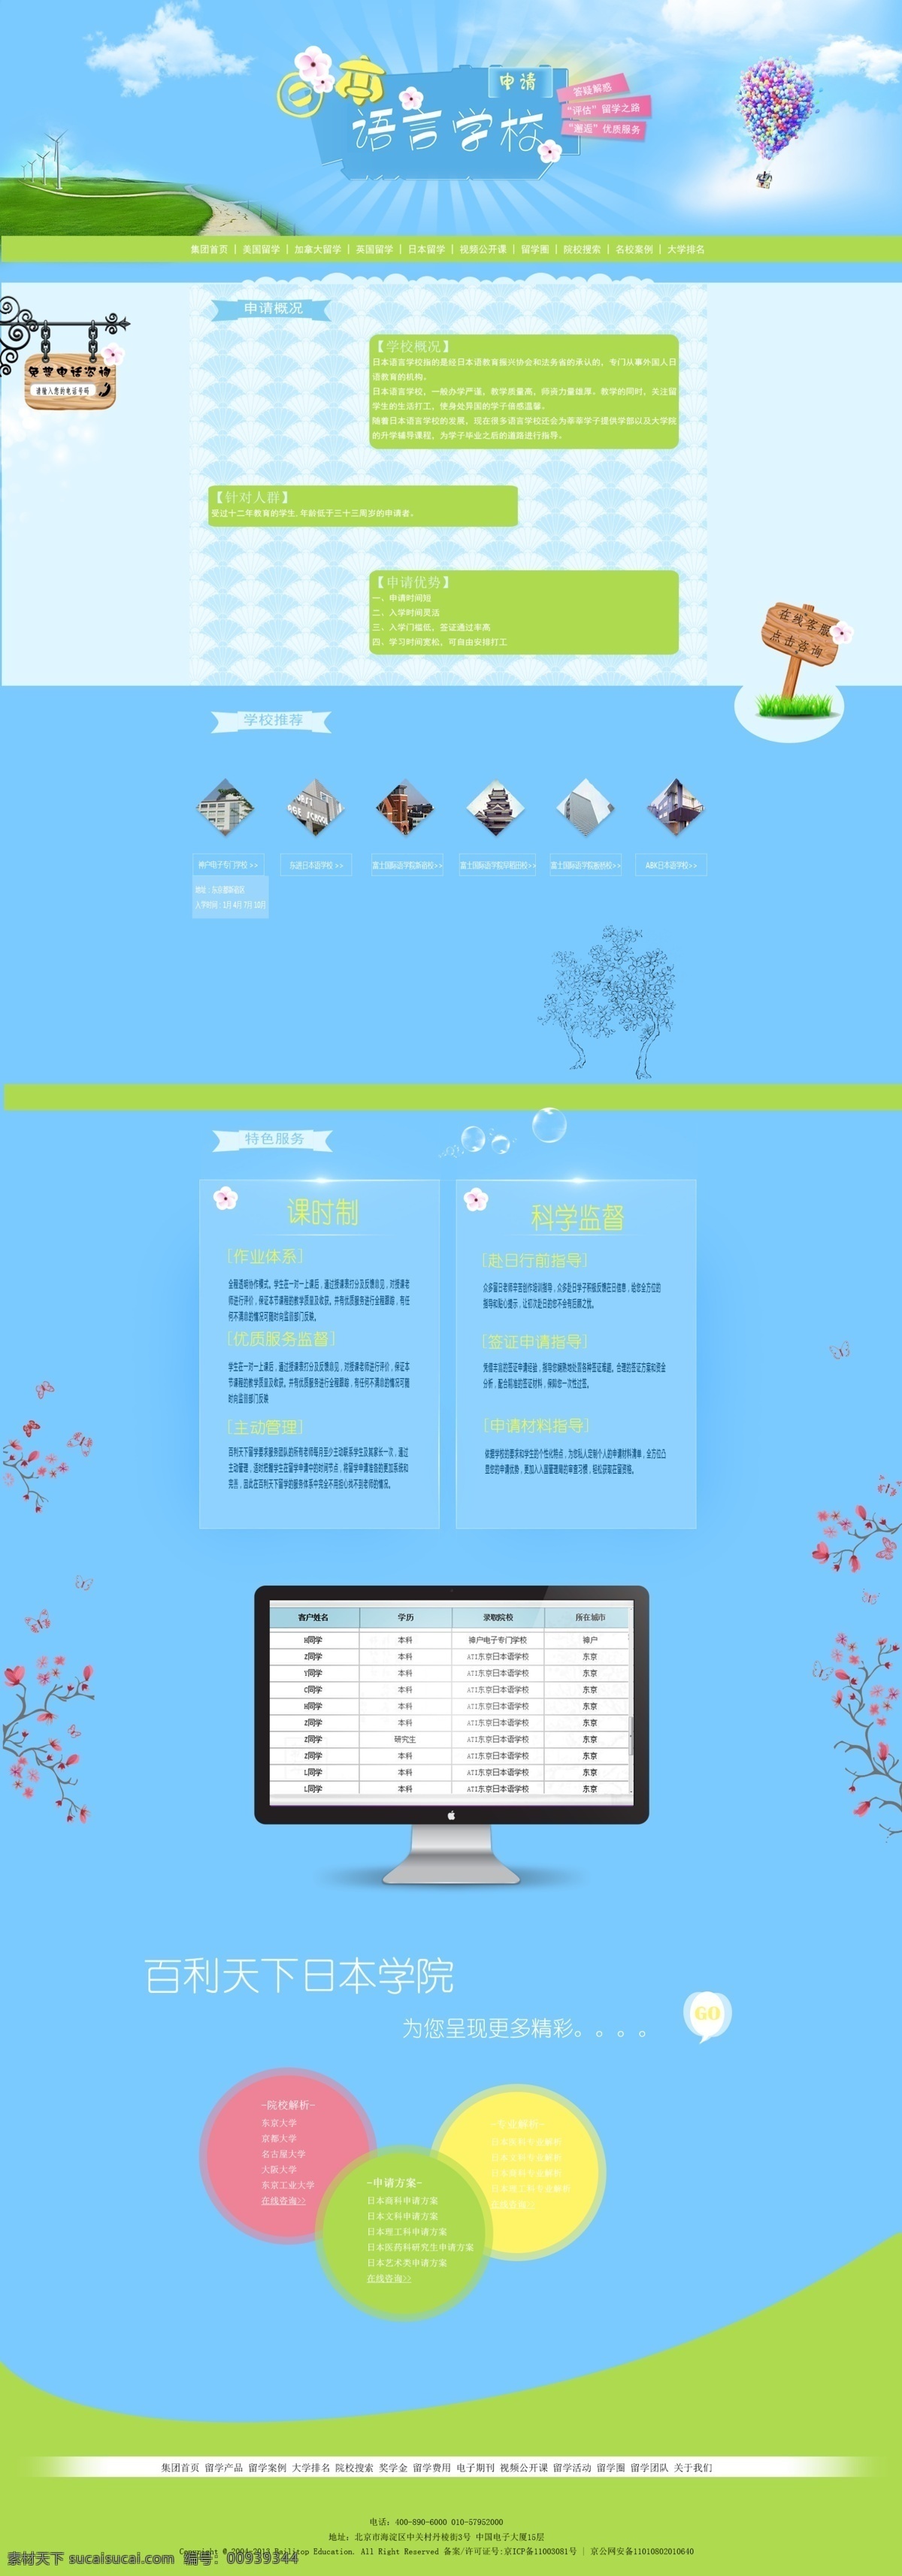 萌 哒 首页 板式 淡蓝色背景 日本 樱花 指示牌 首页板式设计 原创设计 原创网页设计